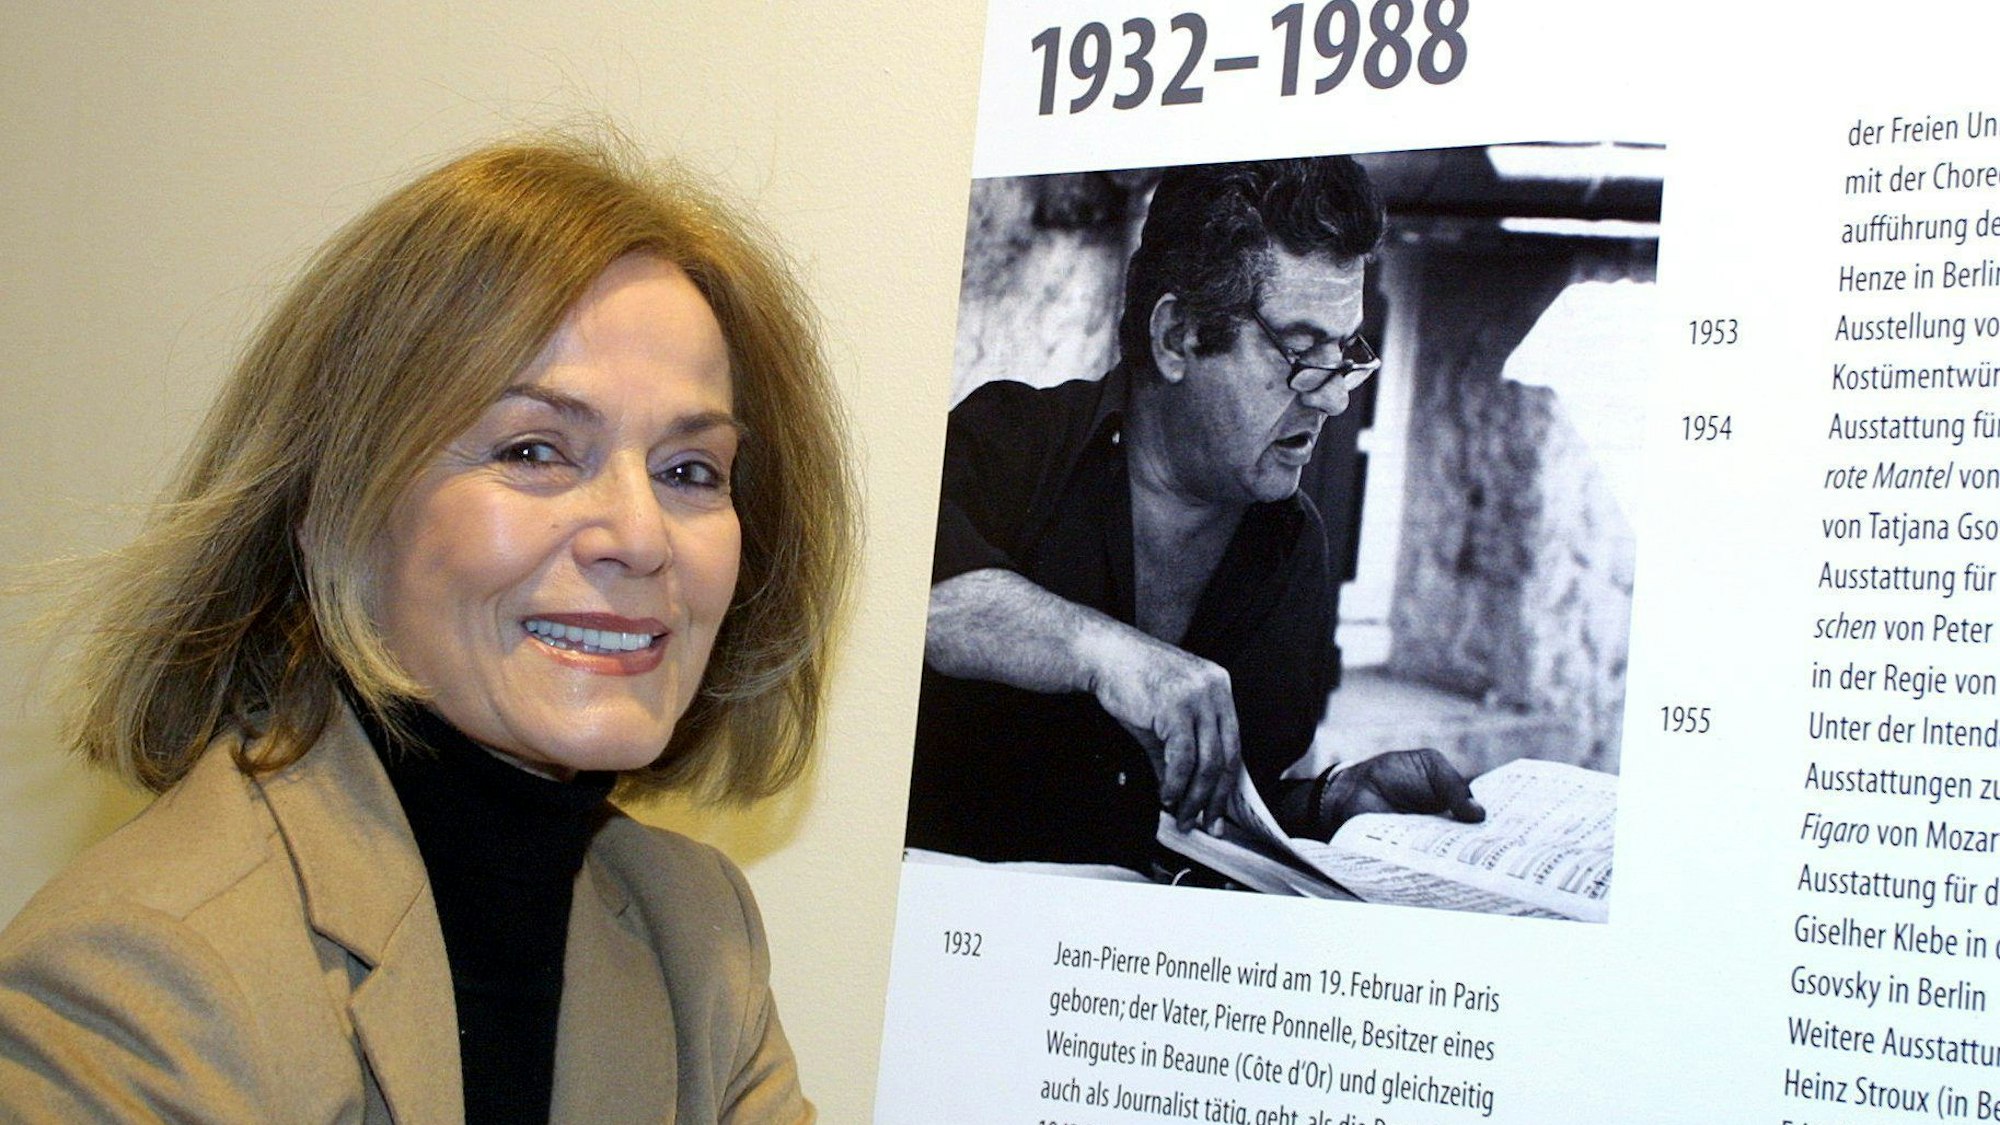 Margit Saad-Ponnelle, Schauspielerin und Regisseurin, steht neben einem Bild das ihren Ehemann, den Regisseur, Bühnen- und Kostümbildner Jean-Pierre Ponnelle, zeigt.